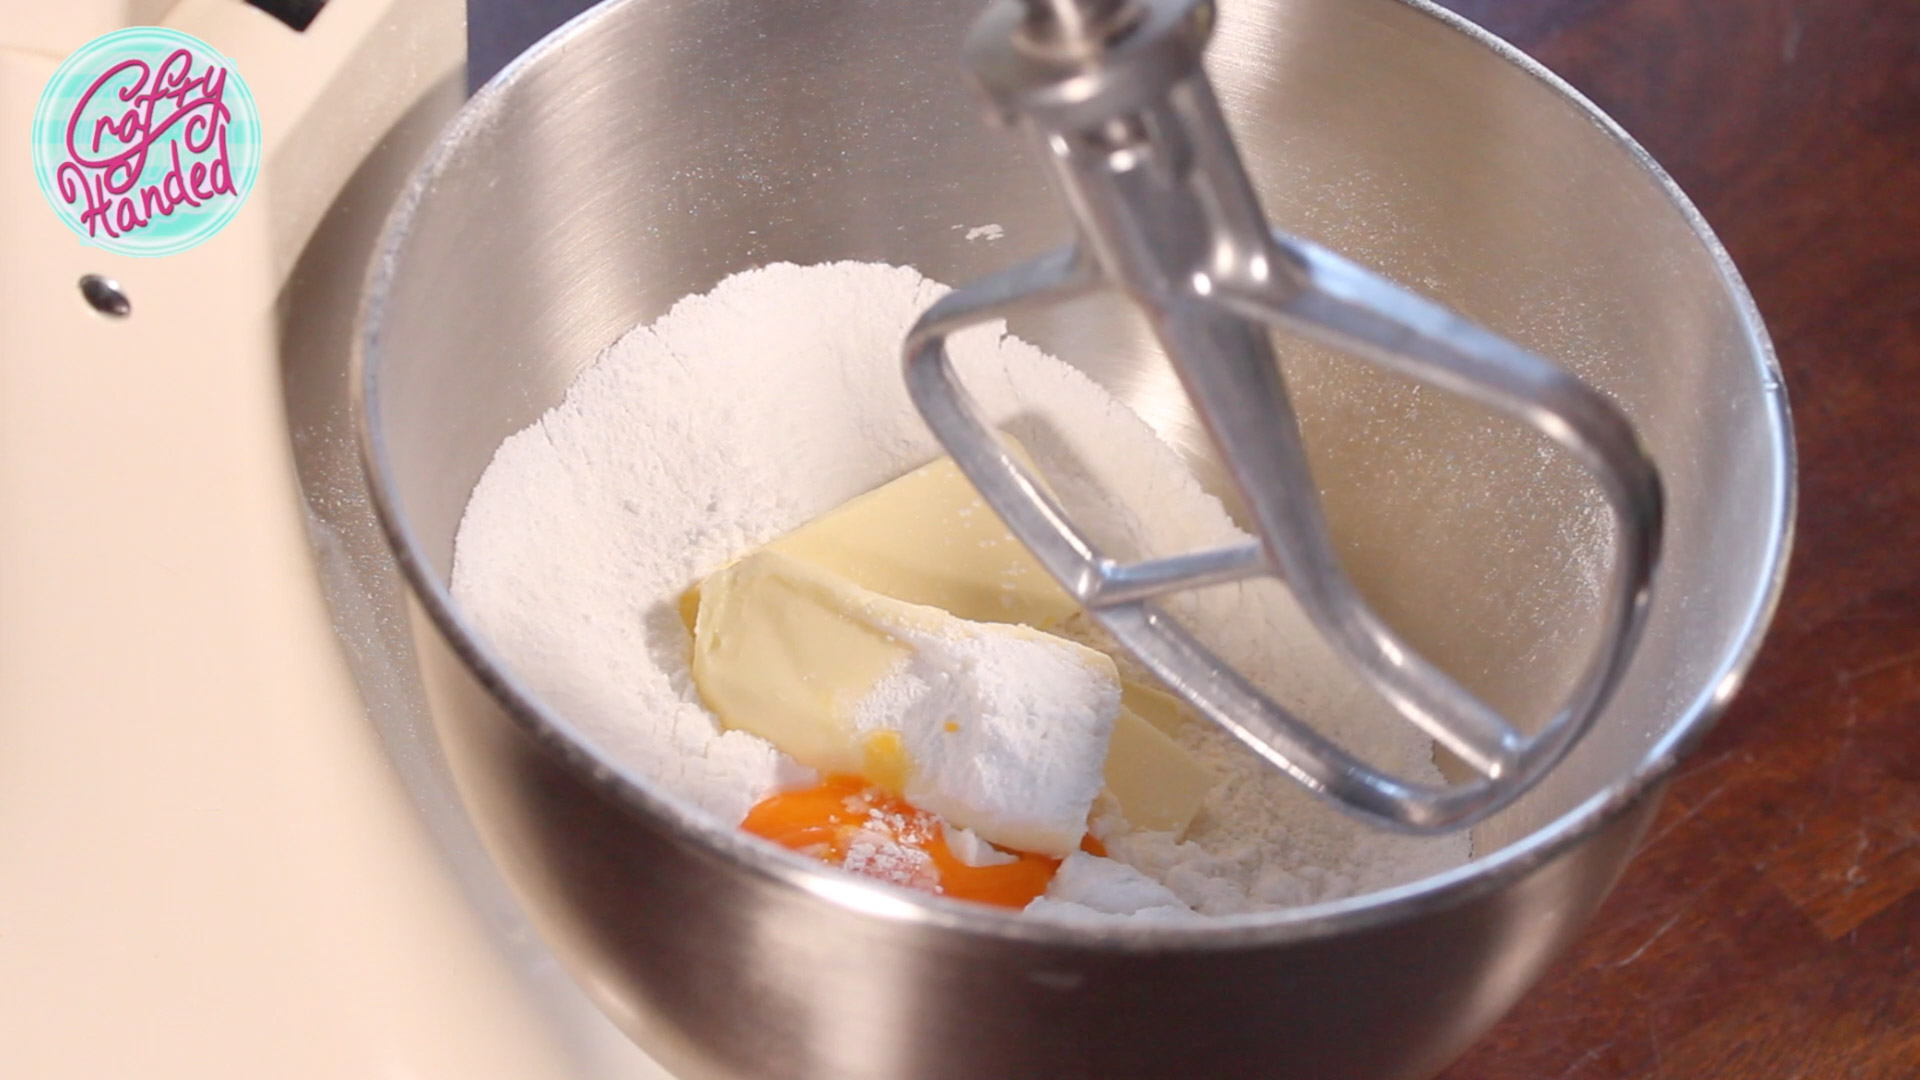 Blending the crust dough